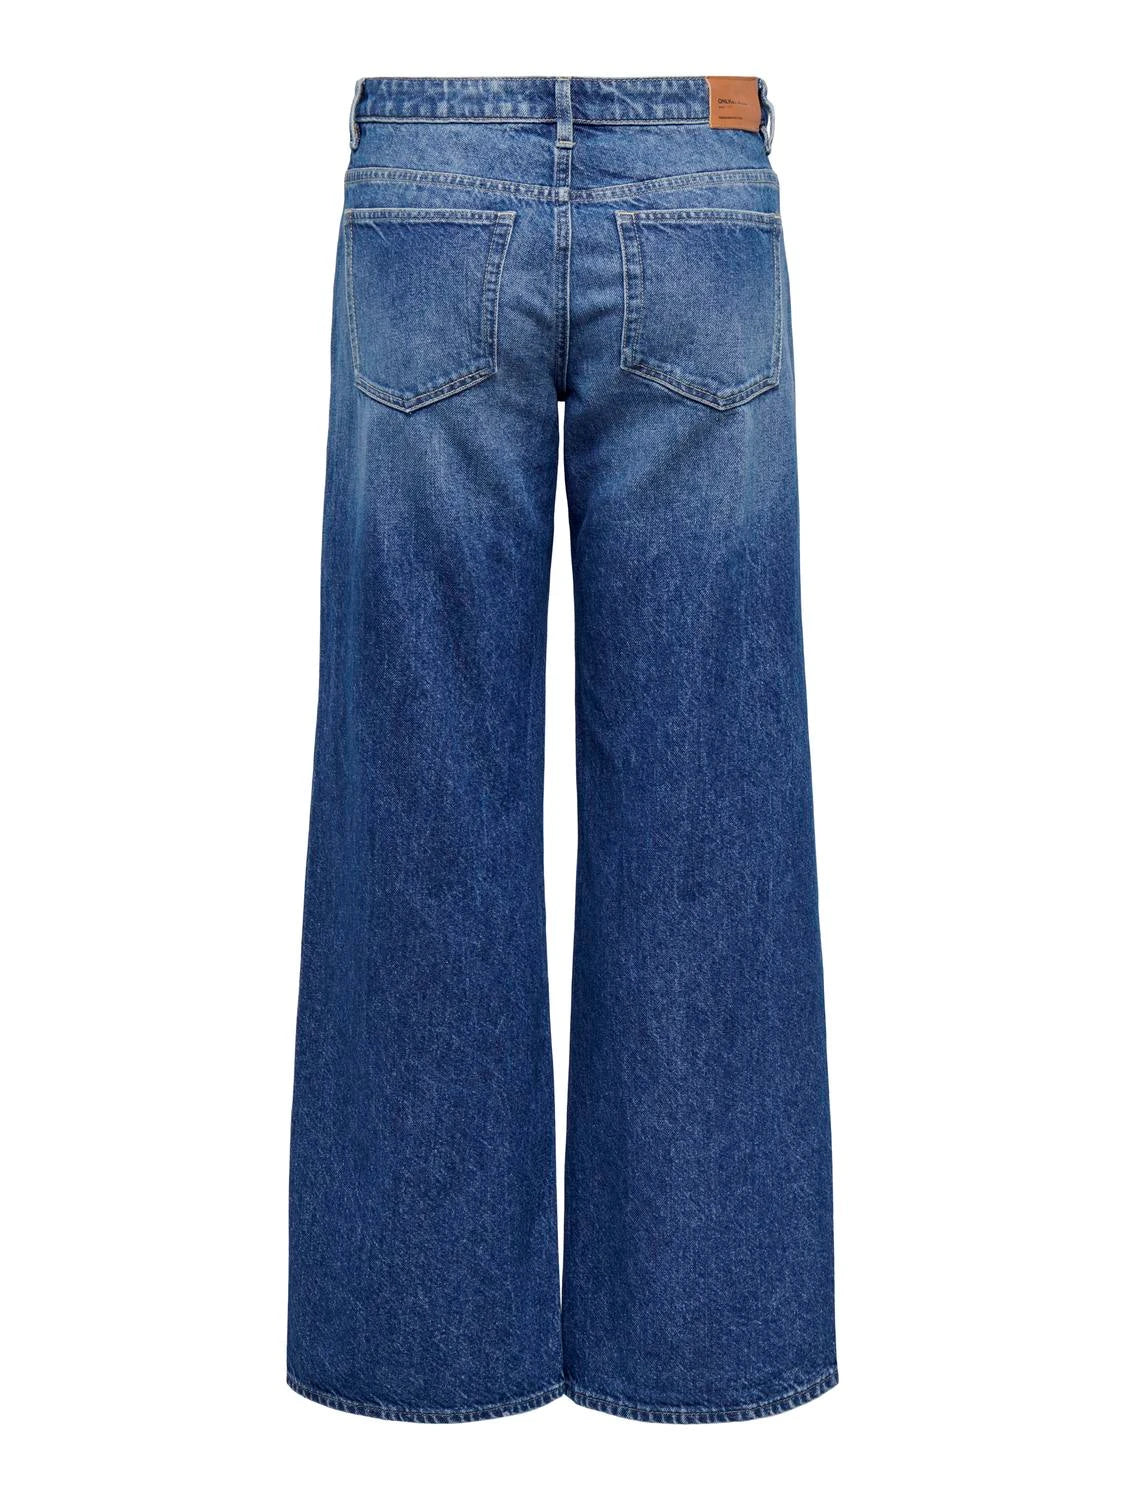 Only donna jeans Chris reg low wide 15312081 Dark Medium Blue Denim